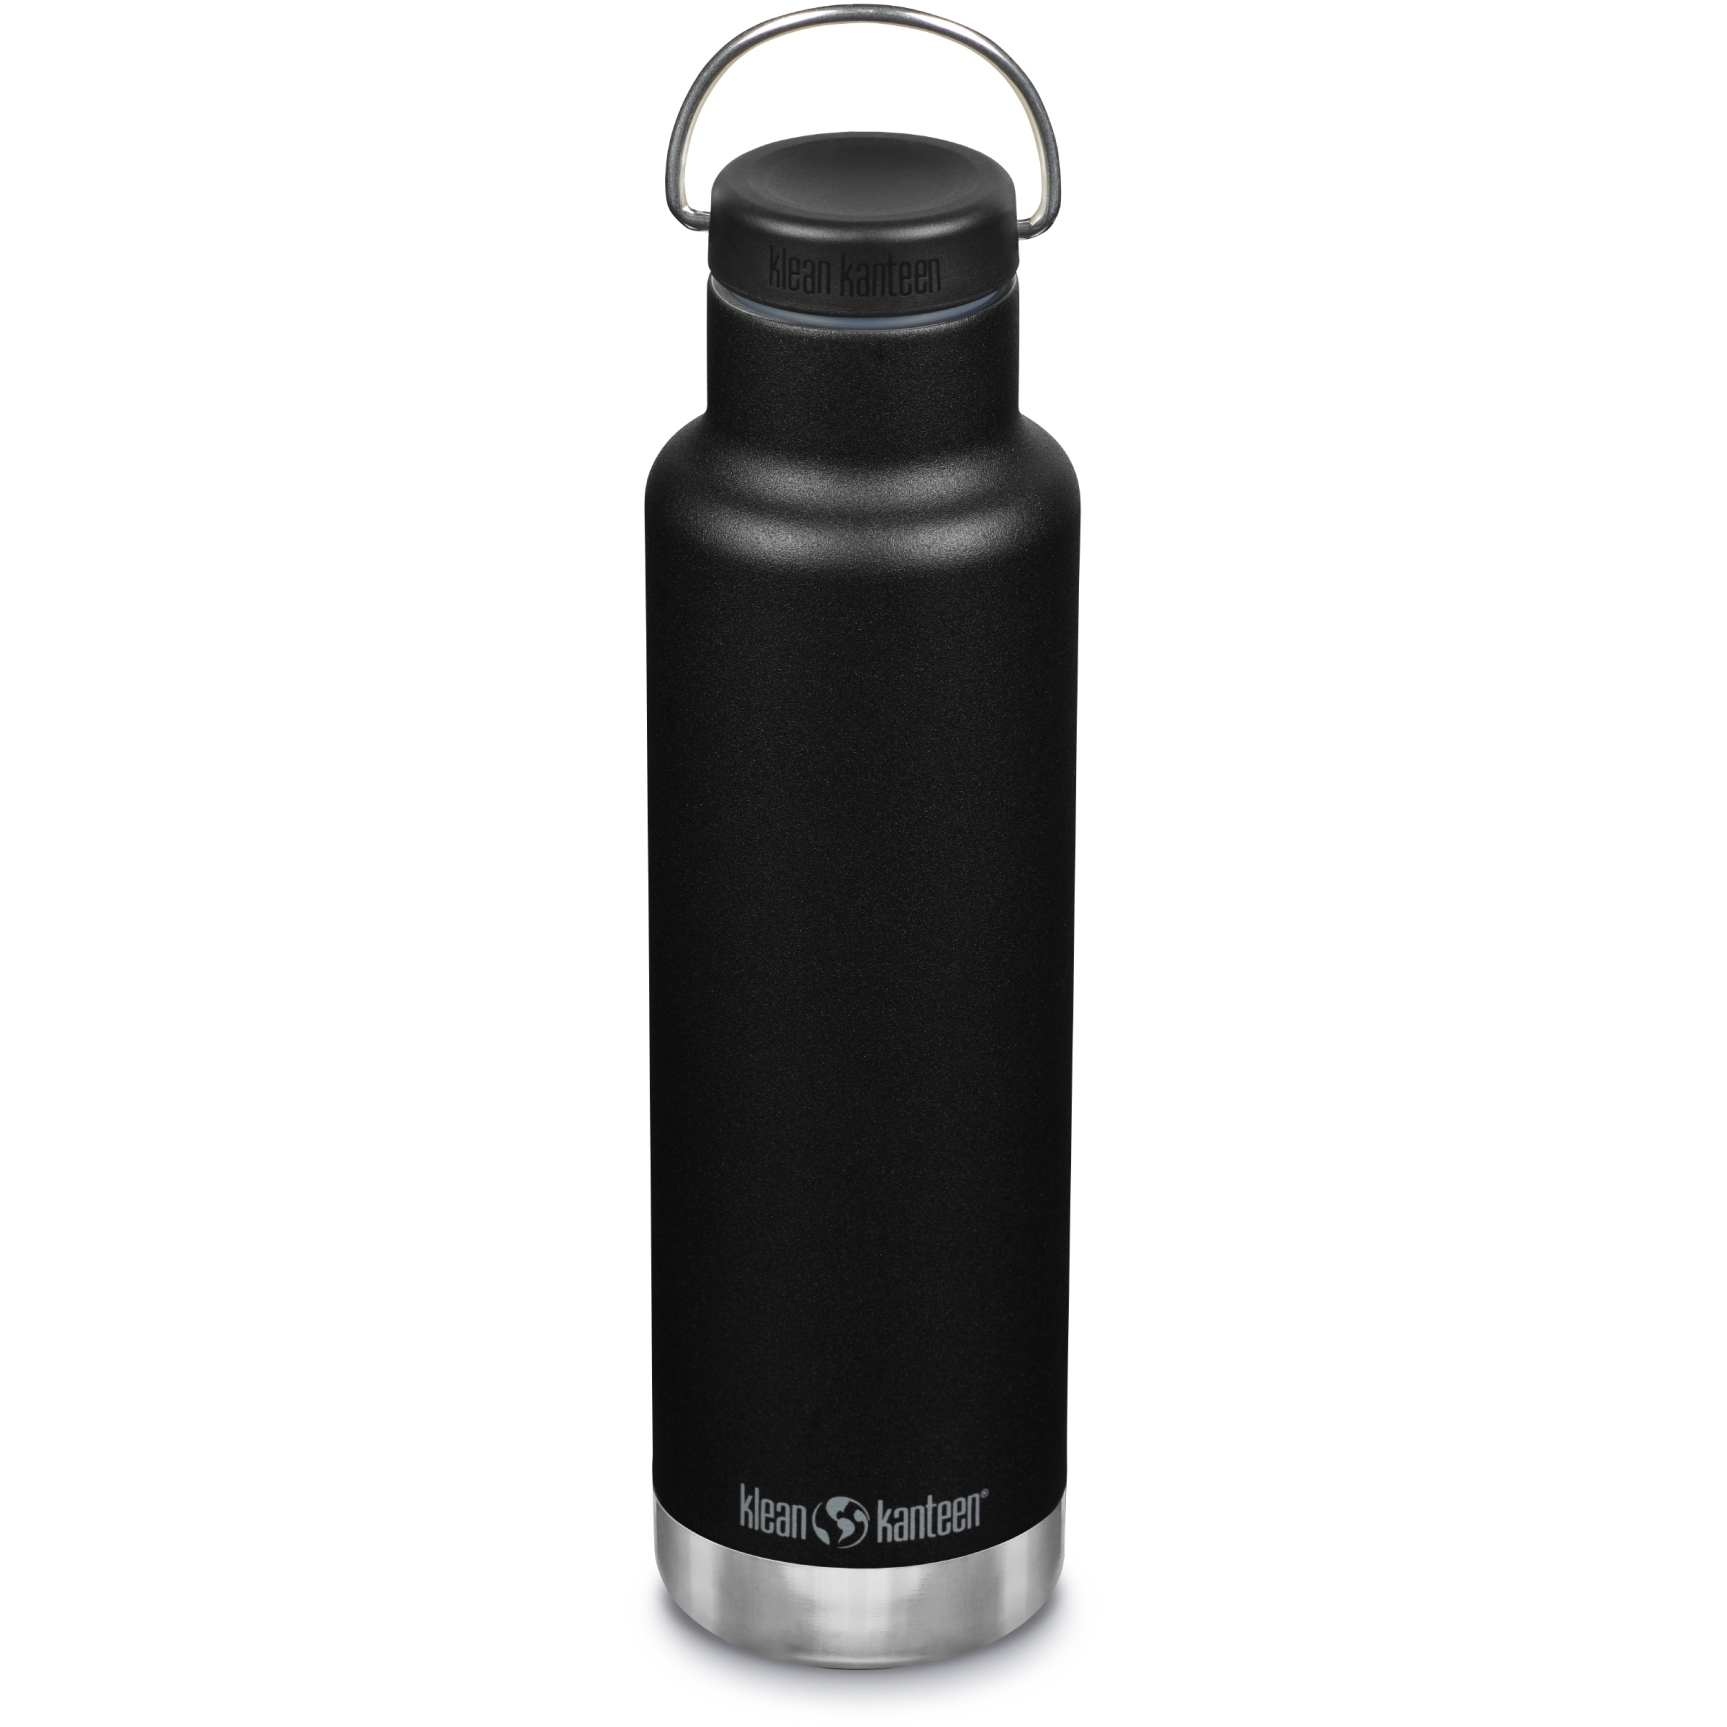 Produktbild von Klean Kanteen Classic Isolier-Trinkflasche mit Loop Cap - 592 ml - schwarz